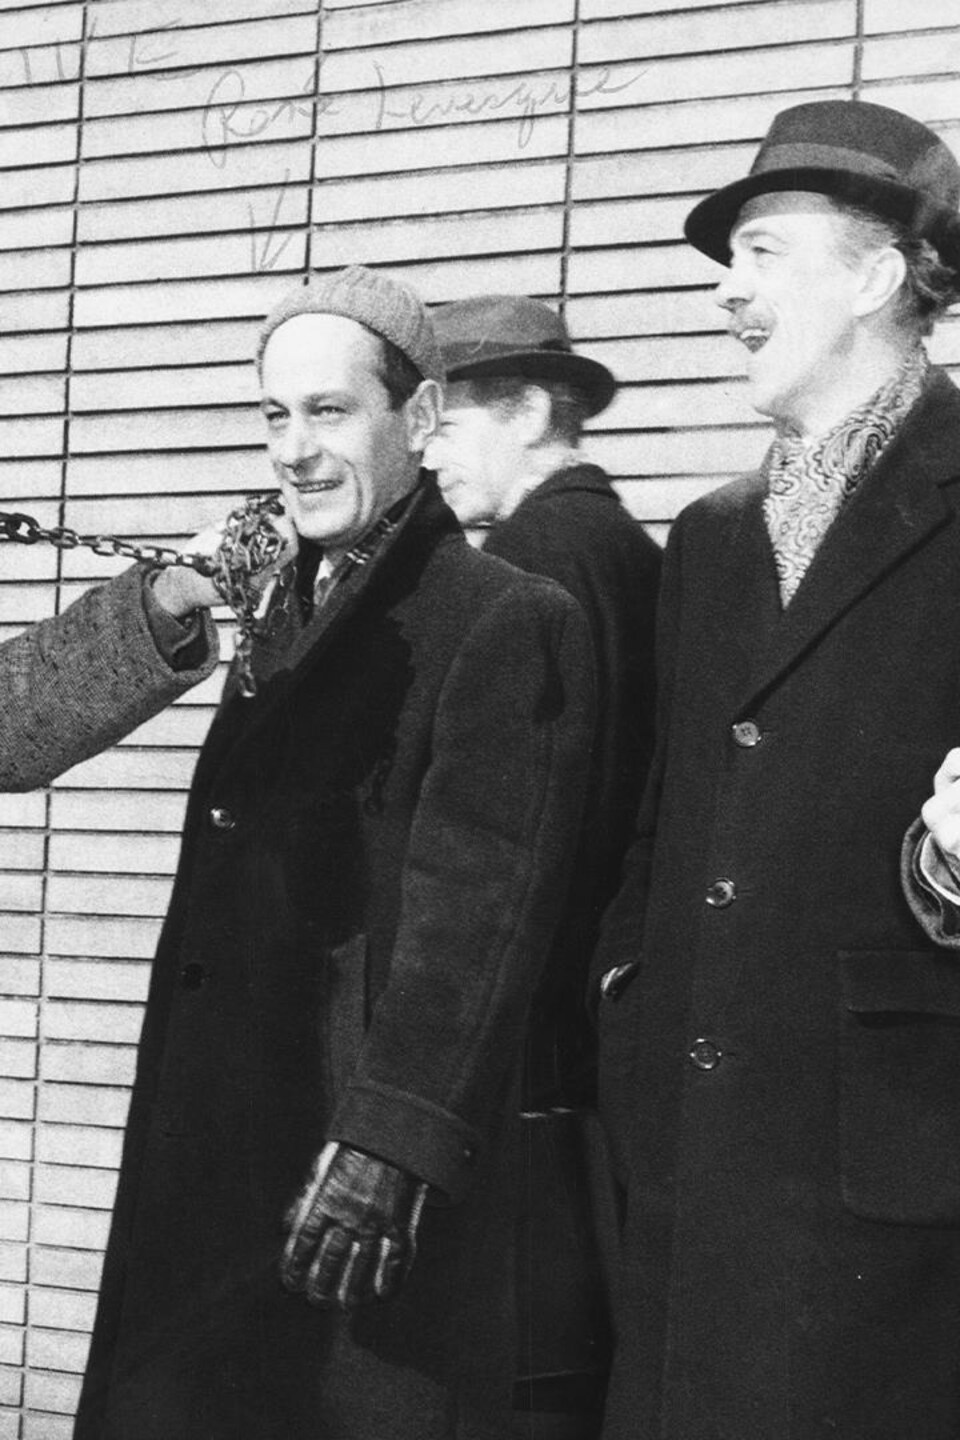 Devant l'édifice de Radio-Canada, lors de la grève des réalisateurs en 1958-1959, le comédien Bertrand Gagnon, un homme non identifié, l'auteur Louis Morisset, l'ours Clive, le journaliste René Lévesque, un homme non identifié, le comédien Paul Guèvremont et un homme non identifié.